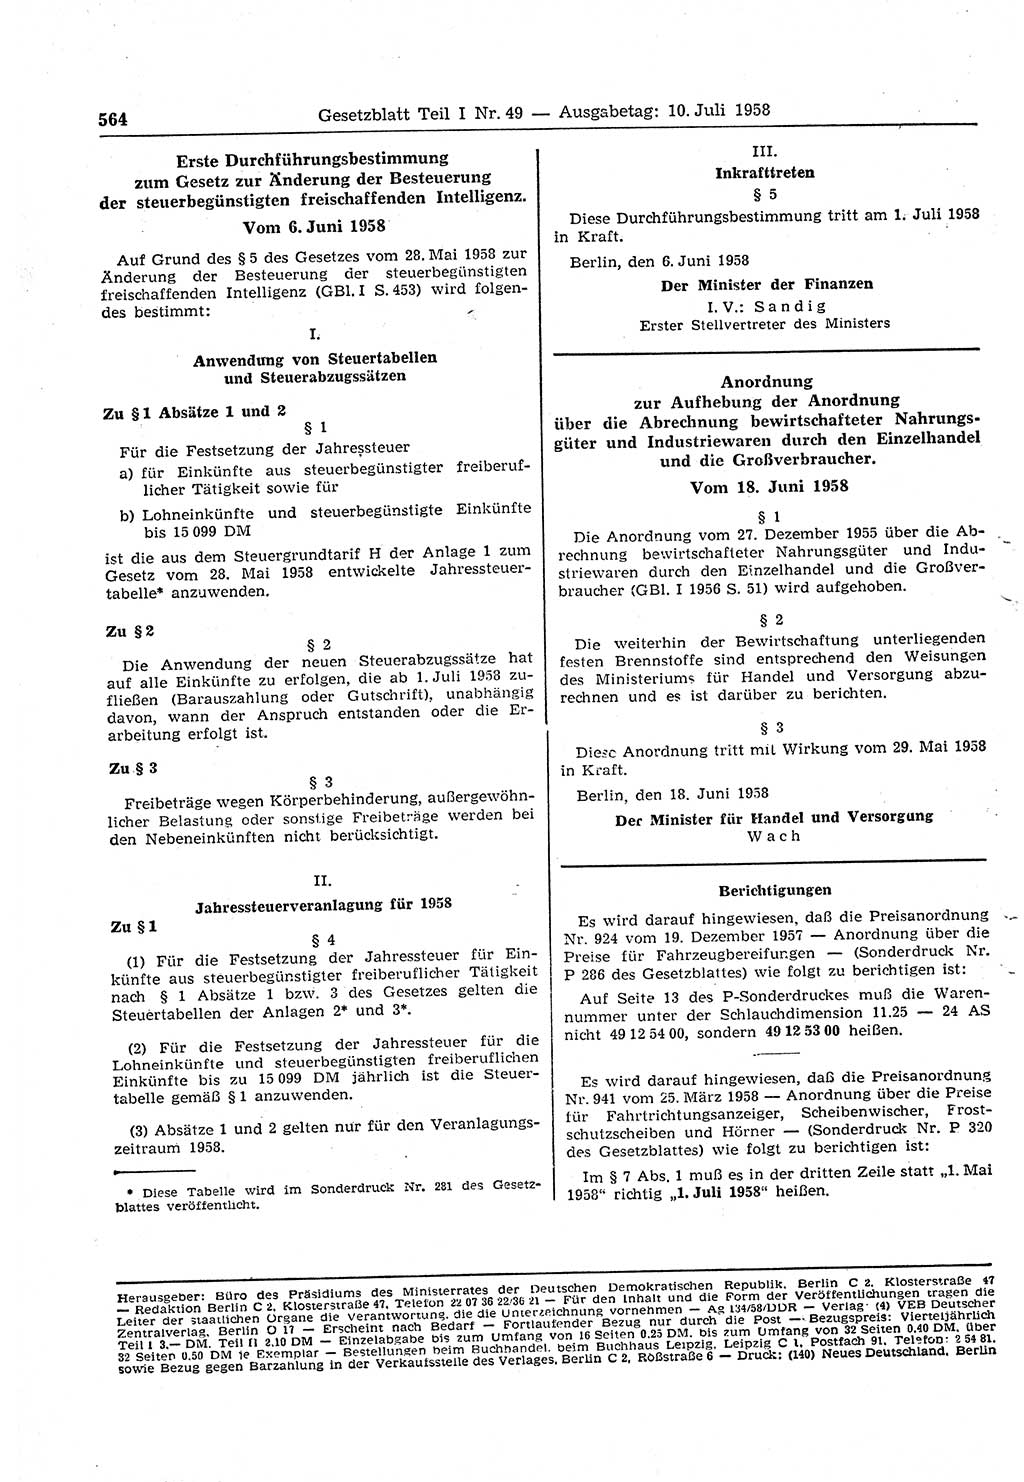 Gesetzblatt (GBl.) der Deutschen Demokratischen Republik (DDR) Teil Ⅰ 1958, Seite 564 (GBl. DDR Ⅰ 1958, S. 564)